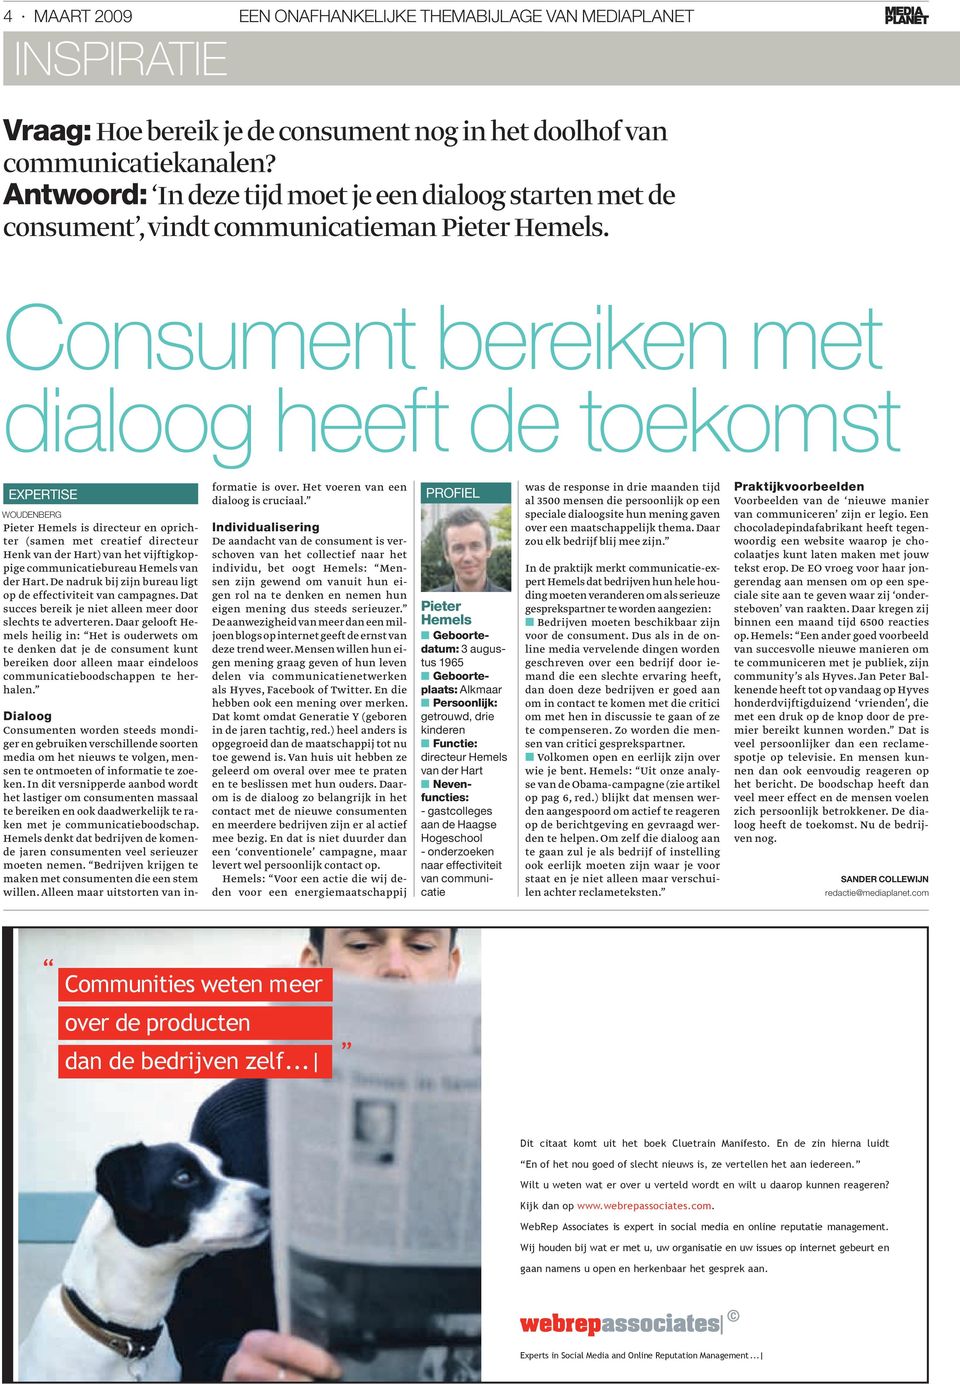 Consument bereiken met dialoog heeft de toekomst expertise woudenberg Pieter Hemels is directeur en oprichter (samen met creatief directeur Henk van der Hart) van het vijftigkoppige